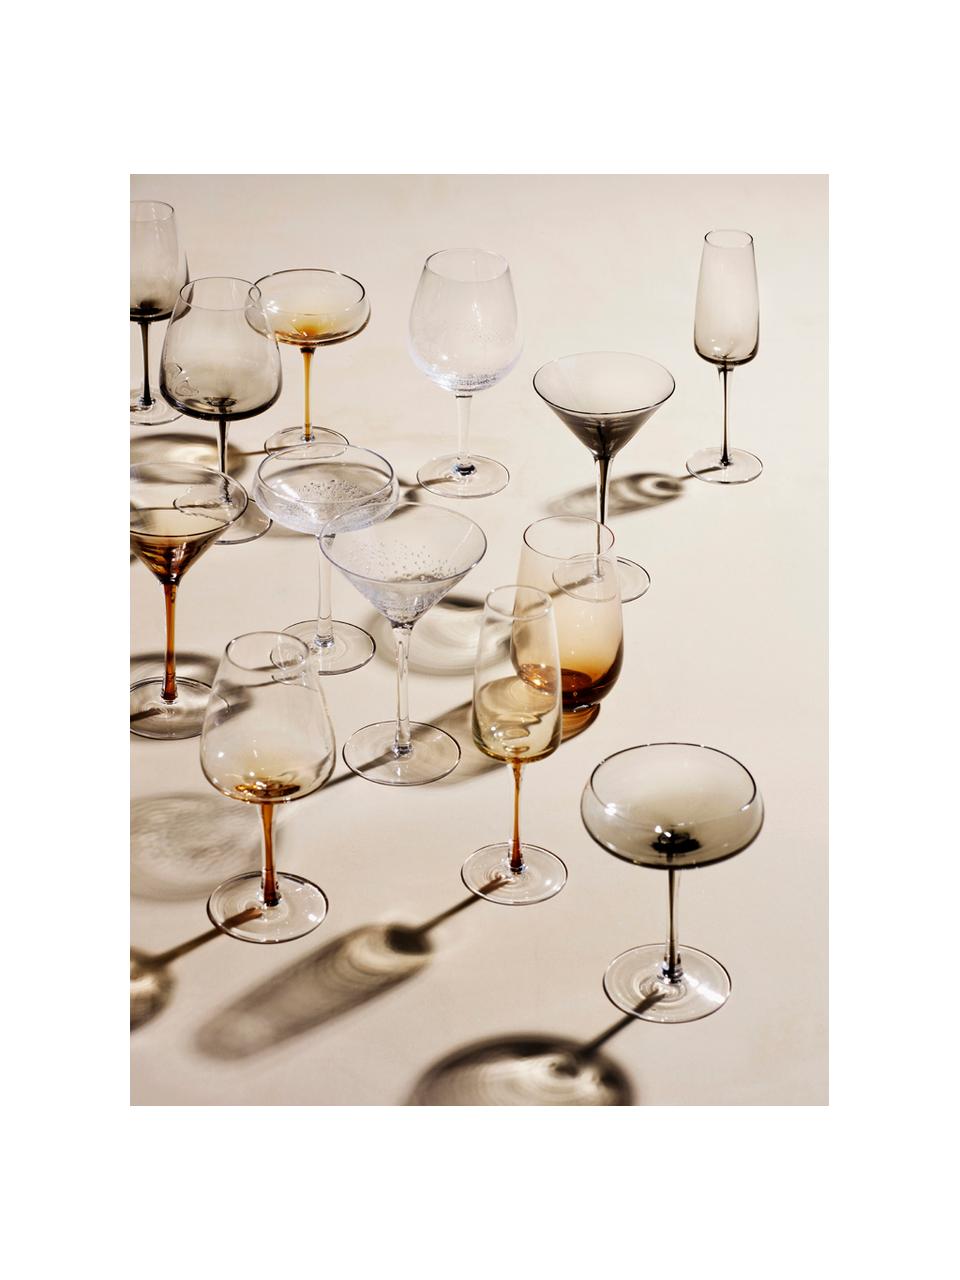 Copas de vino tinto de vidrio soplado artesanalmente con burbujas Bubble, 4 uds., Vidrio soplado artesanalmente, Transparente con burbujas de aire, Ø 10 x Al 22 cm, 250 ml